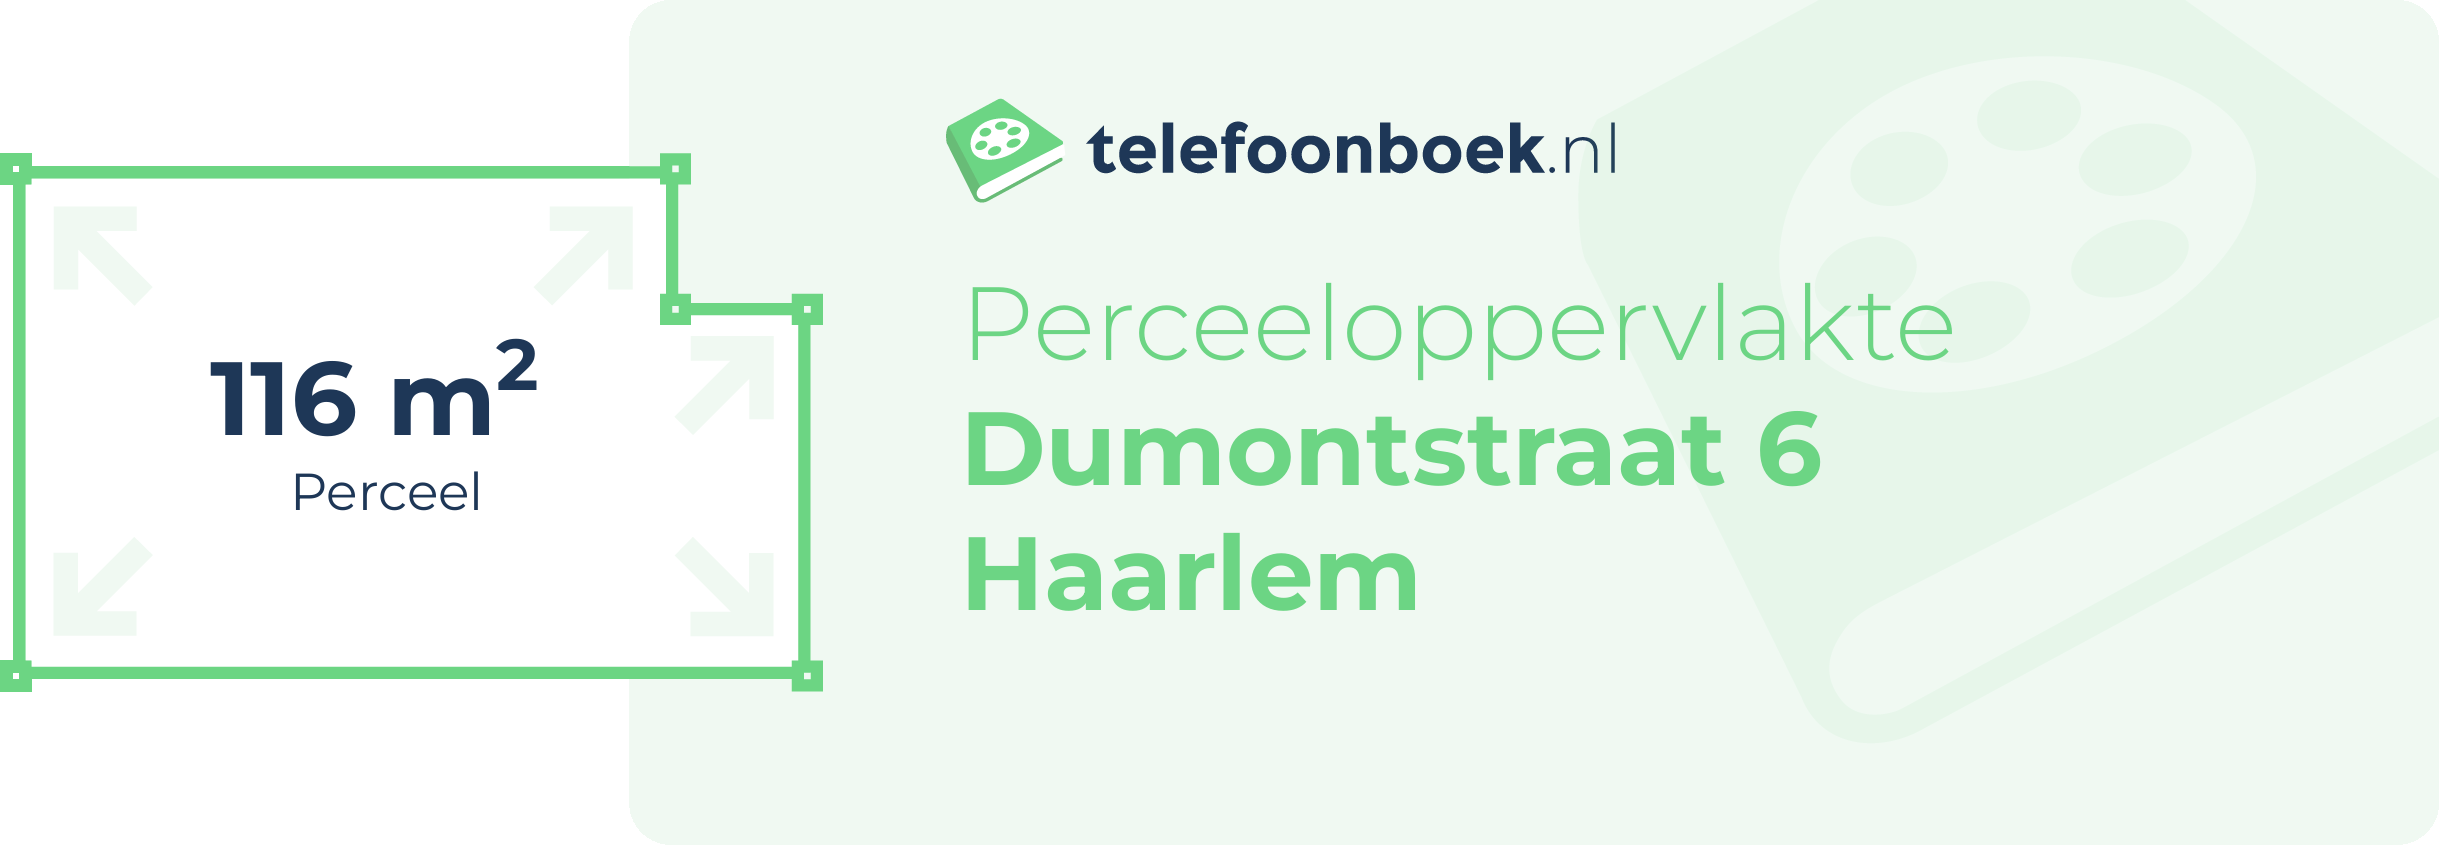 Perceeloppervlakte Dumontstraat 6 Haarlem